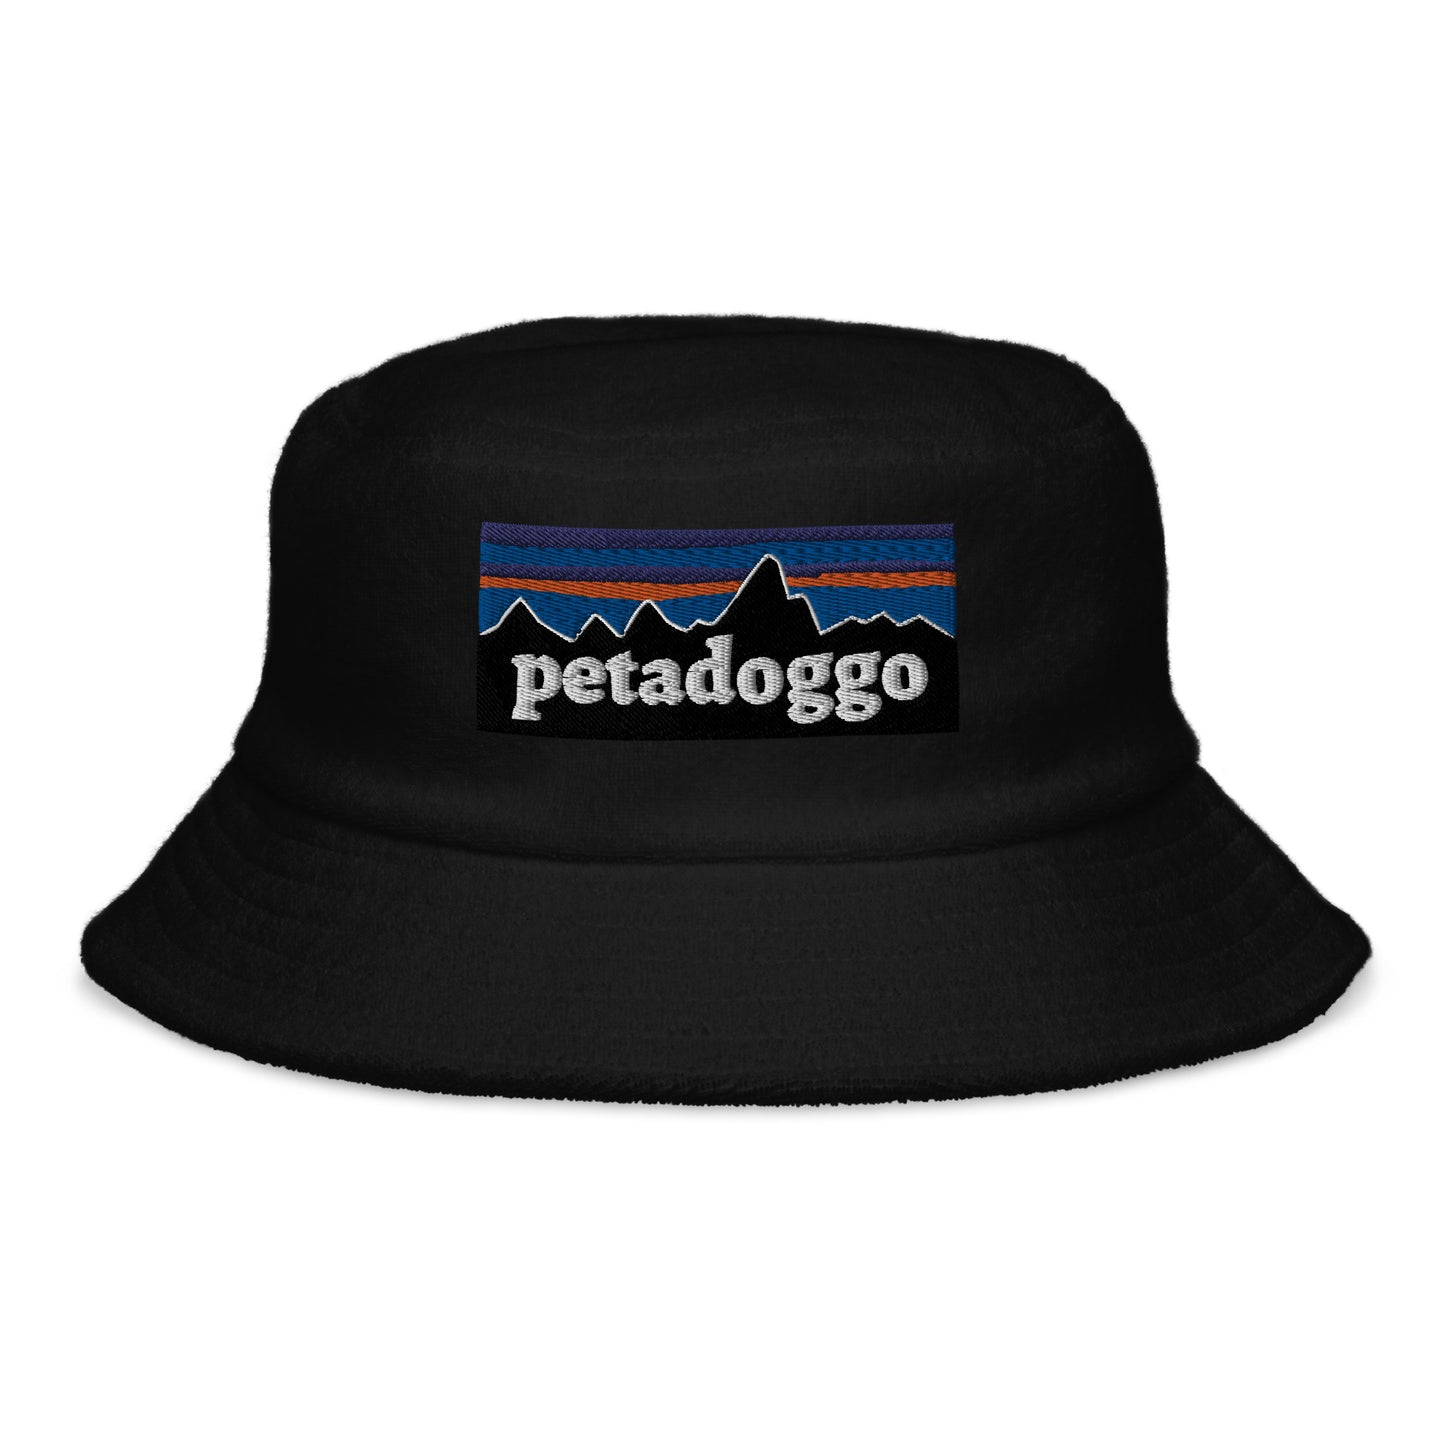 Petadoggo Terry cloth bucket hat